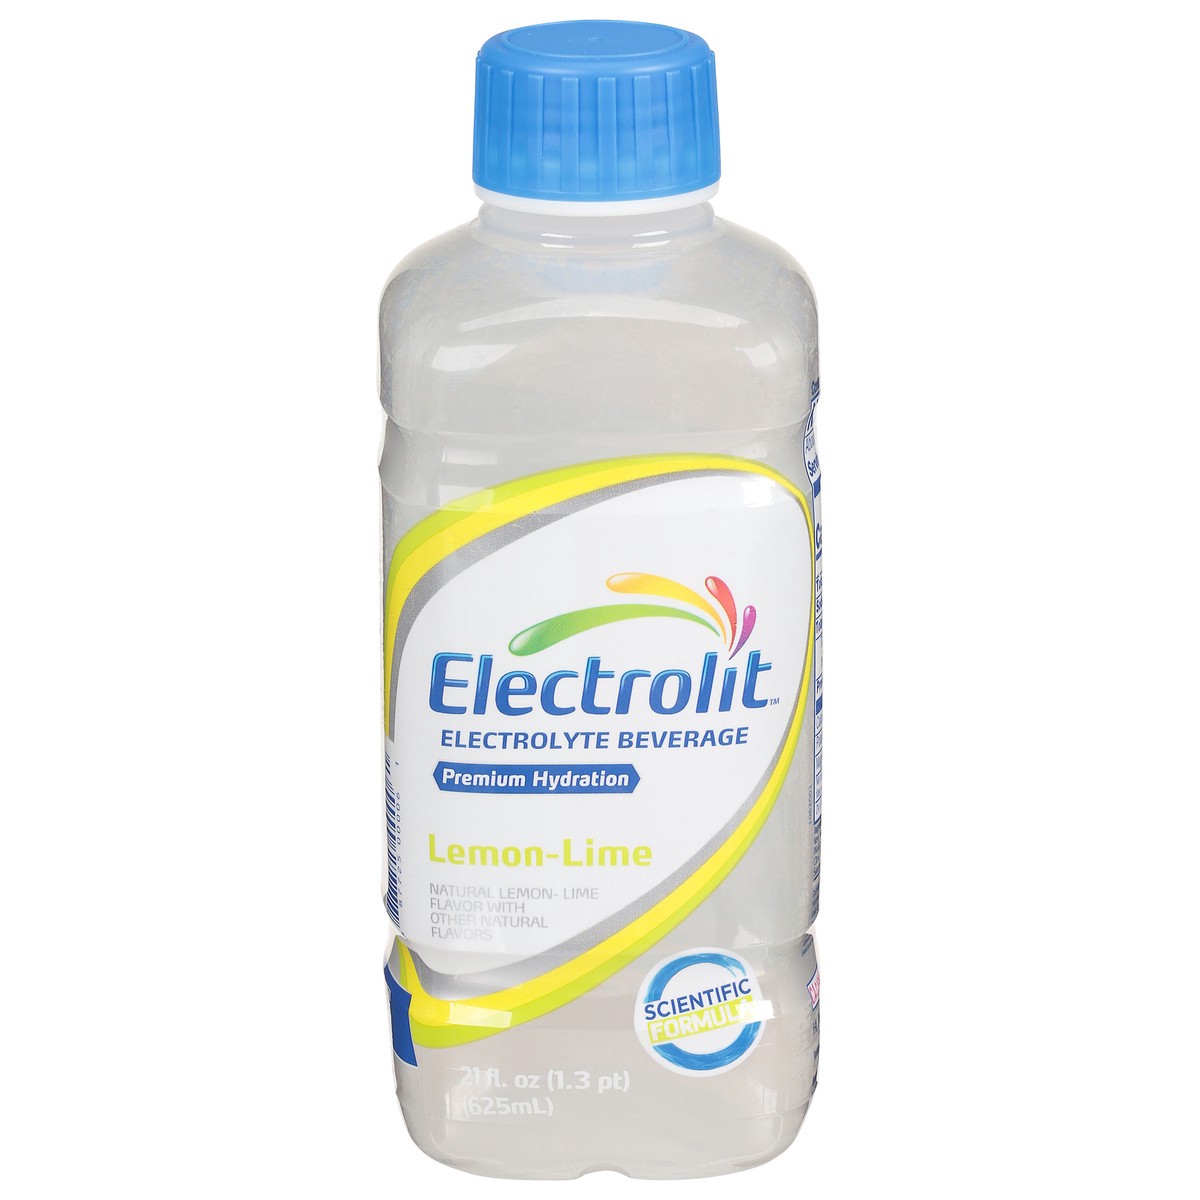 slide 1 of 13, Electrolit Premium Hydration Lemon-Lime Electrolyte Beverage 21 fl oz, 21 fl oz